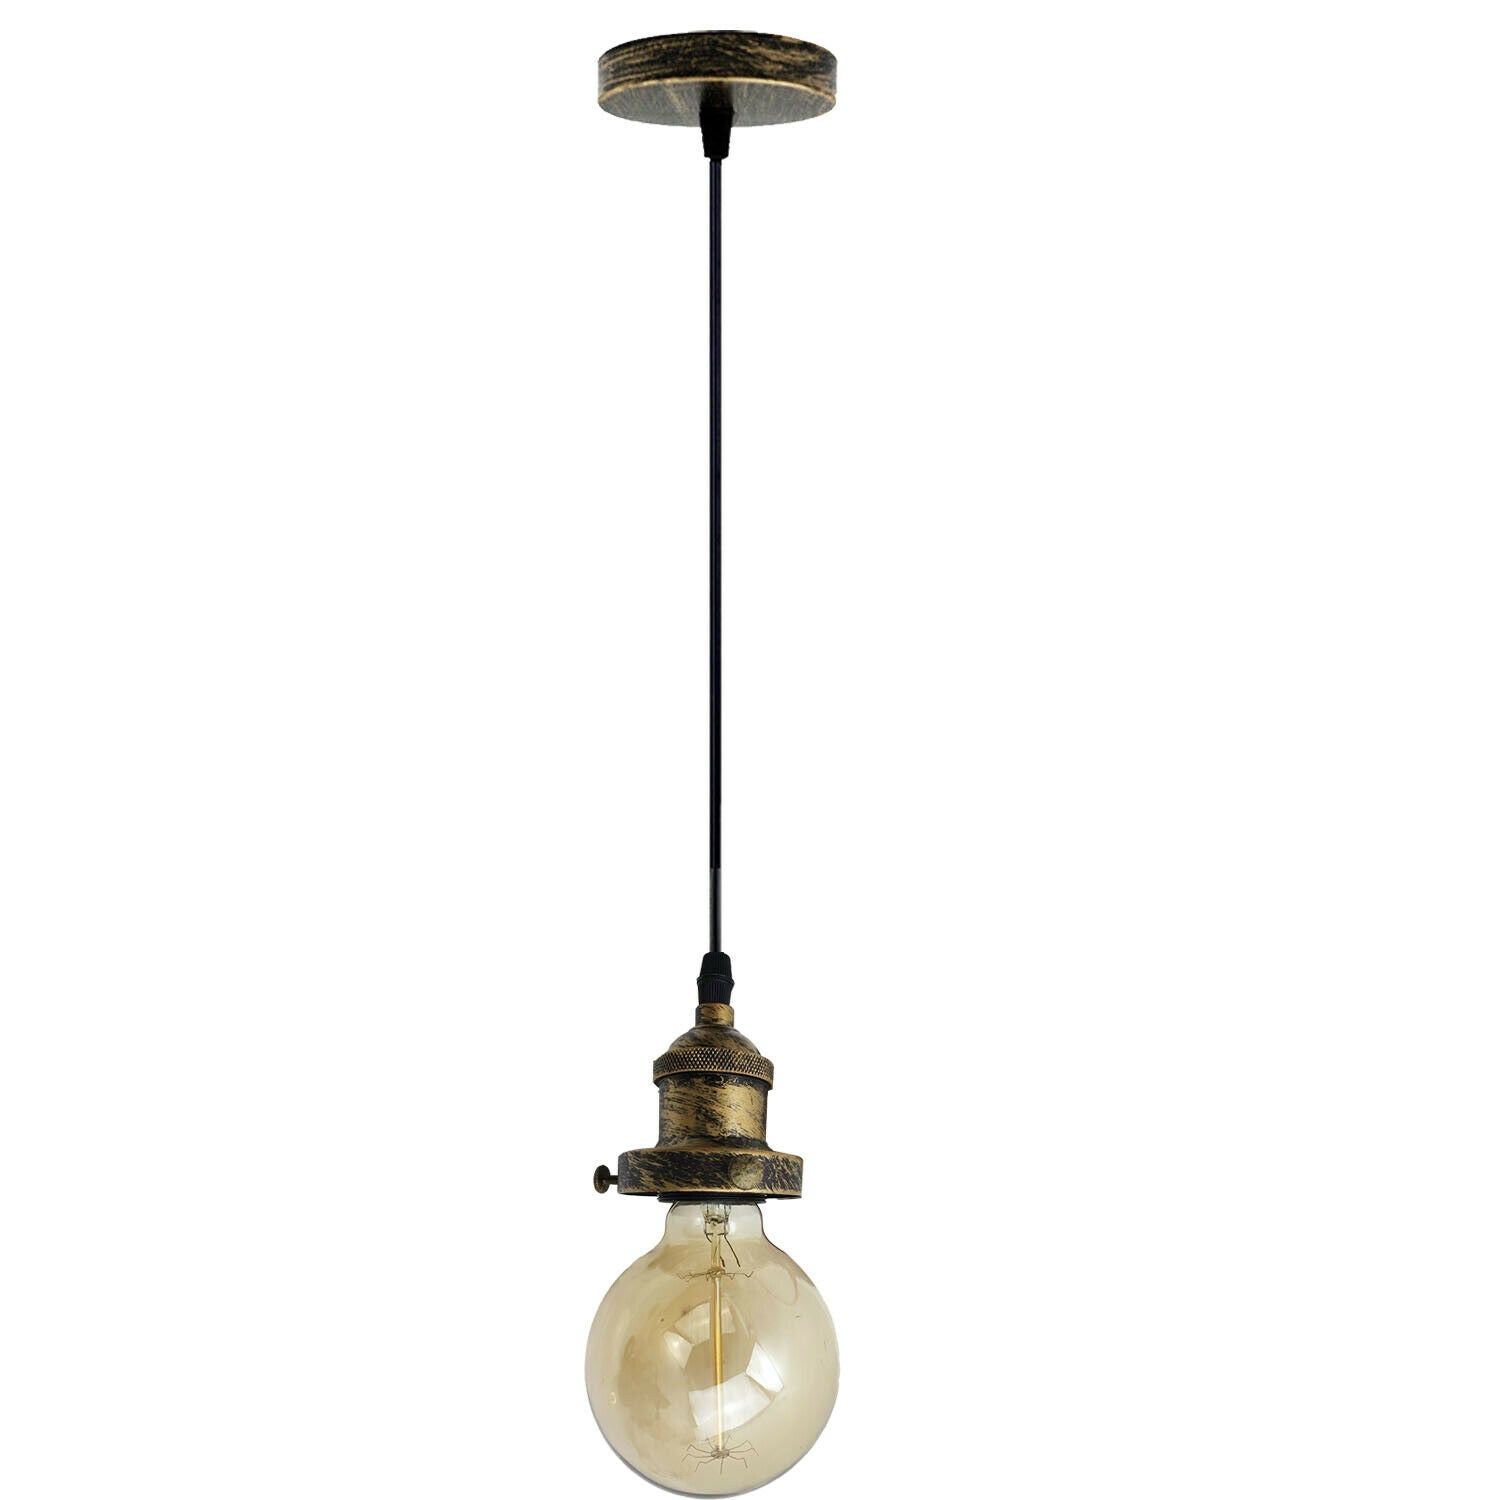 E27 Ceiling Rose Light Fitting Vintage Industrial Pendant Lamp Bulb Holder Light - Brushed Copper~2208 - LEDSone UK Ltd